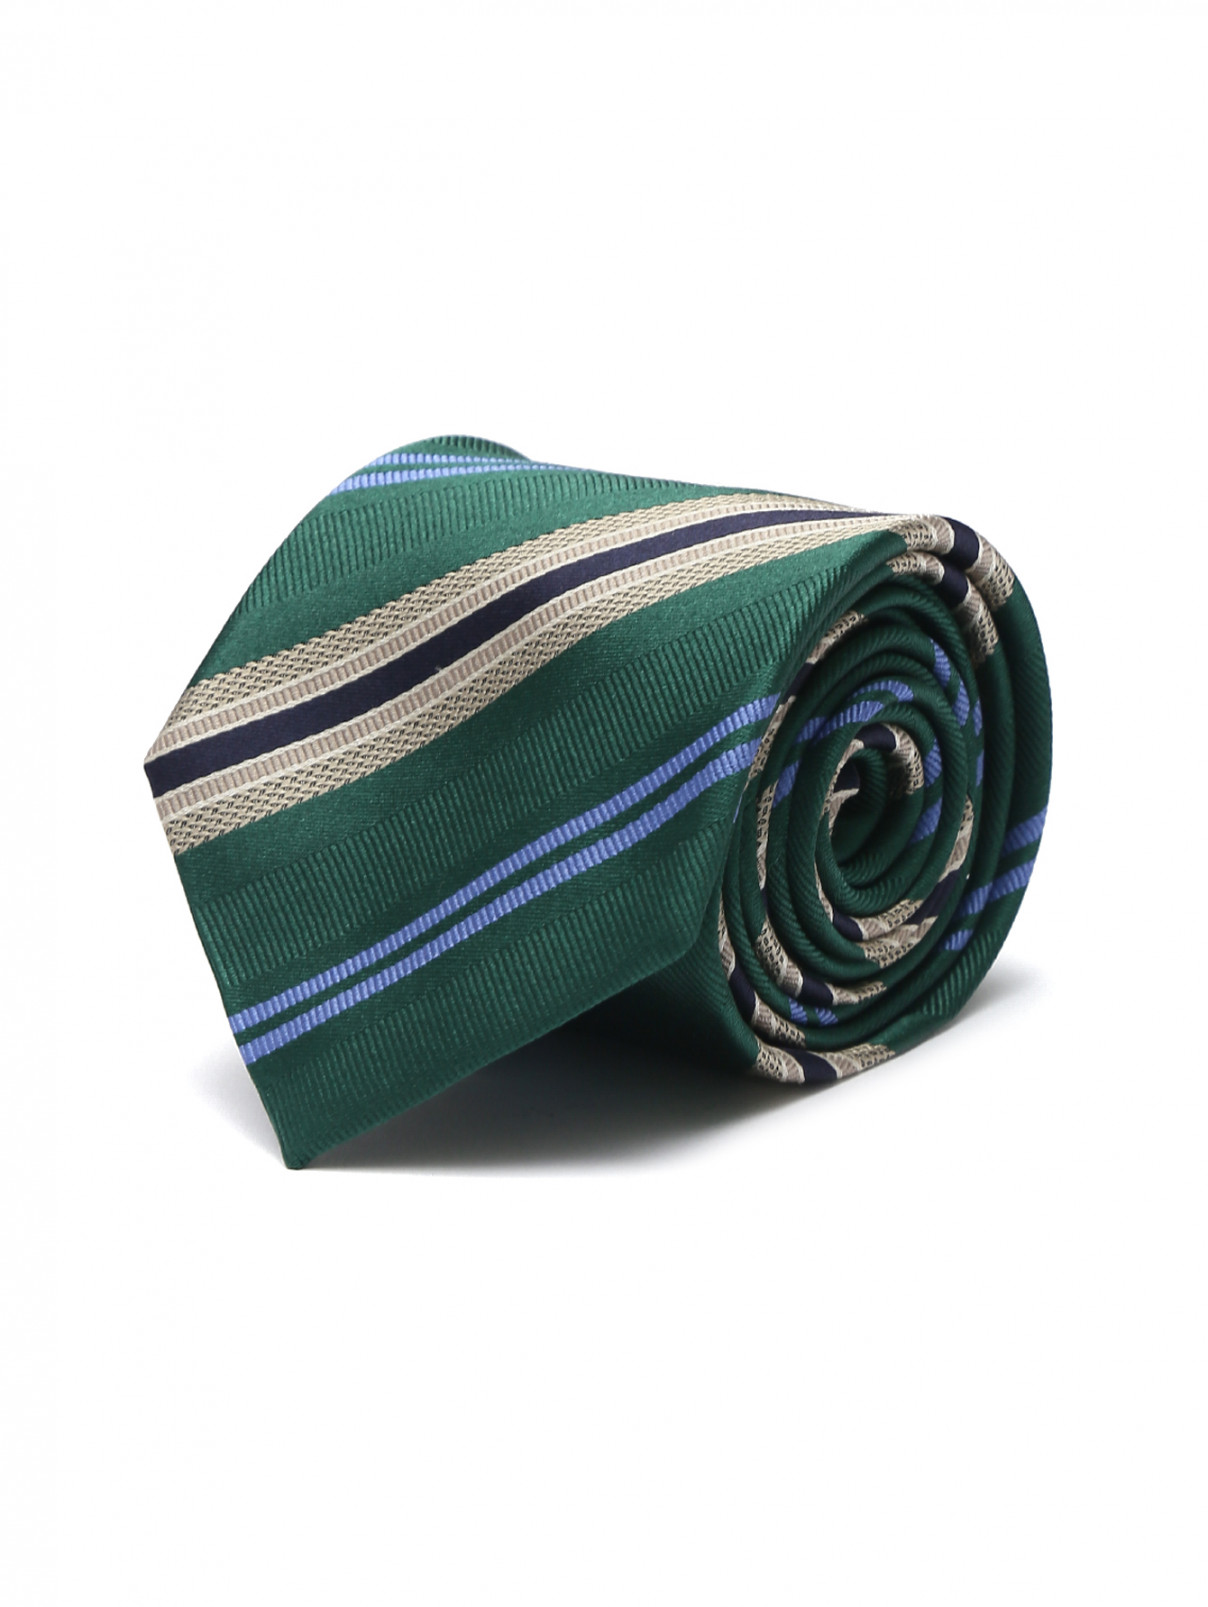 Галстук из шелка в полоску Gabriele Pasini  –  Общий вид  – Цвет:  Зеленый